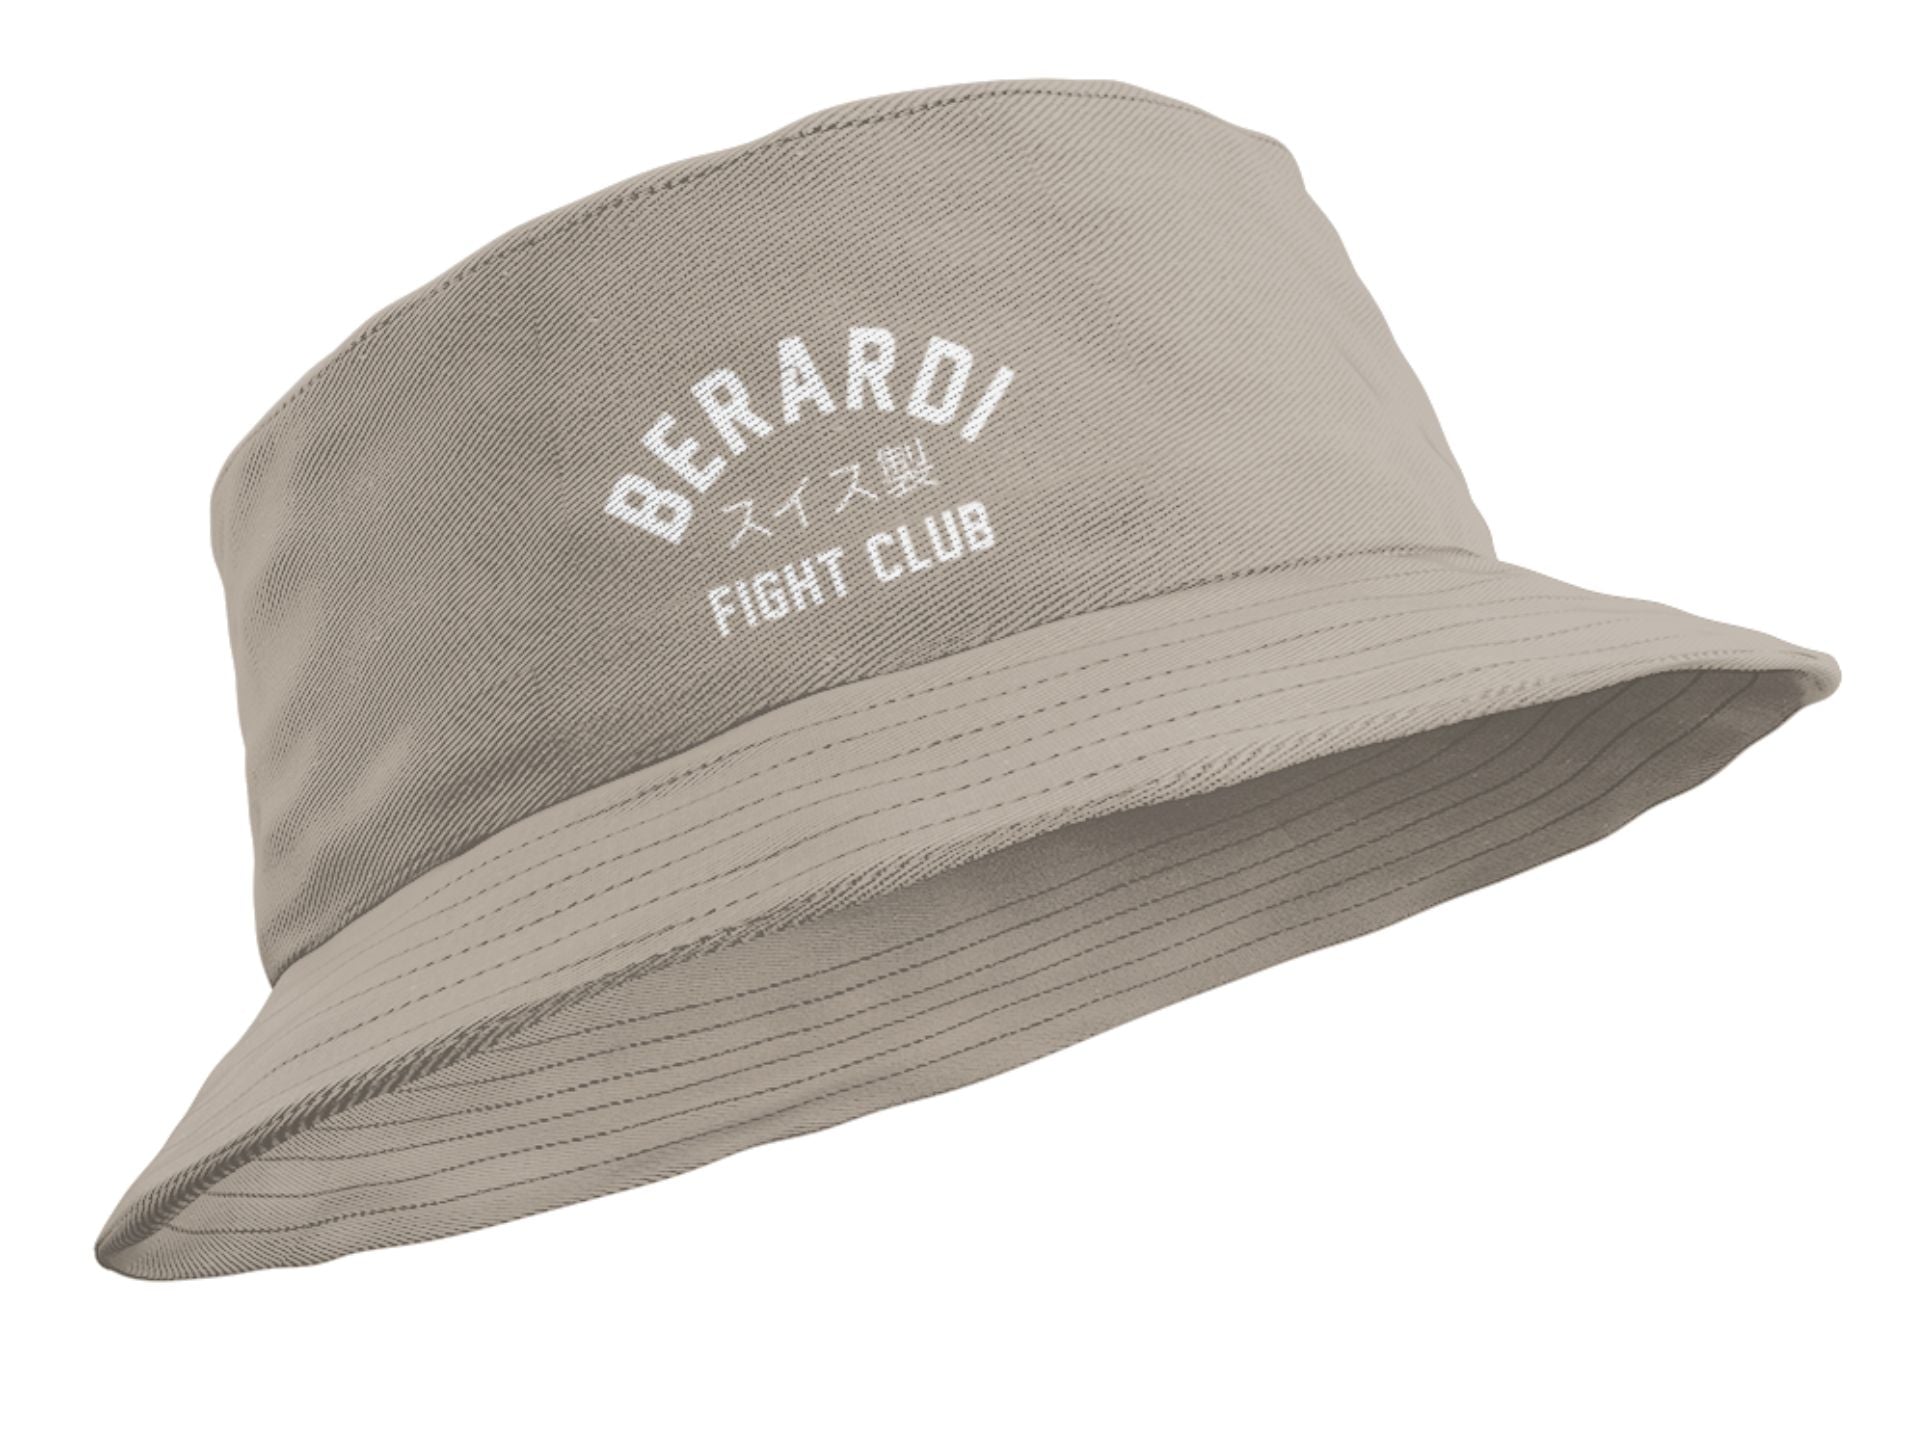 Berardi Fight Club Bucket Hat